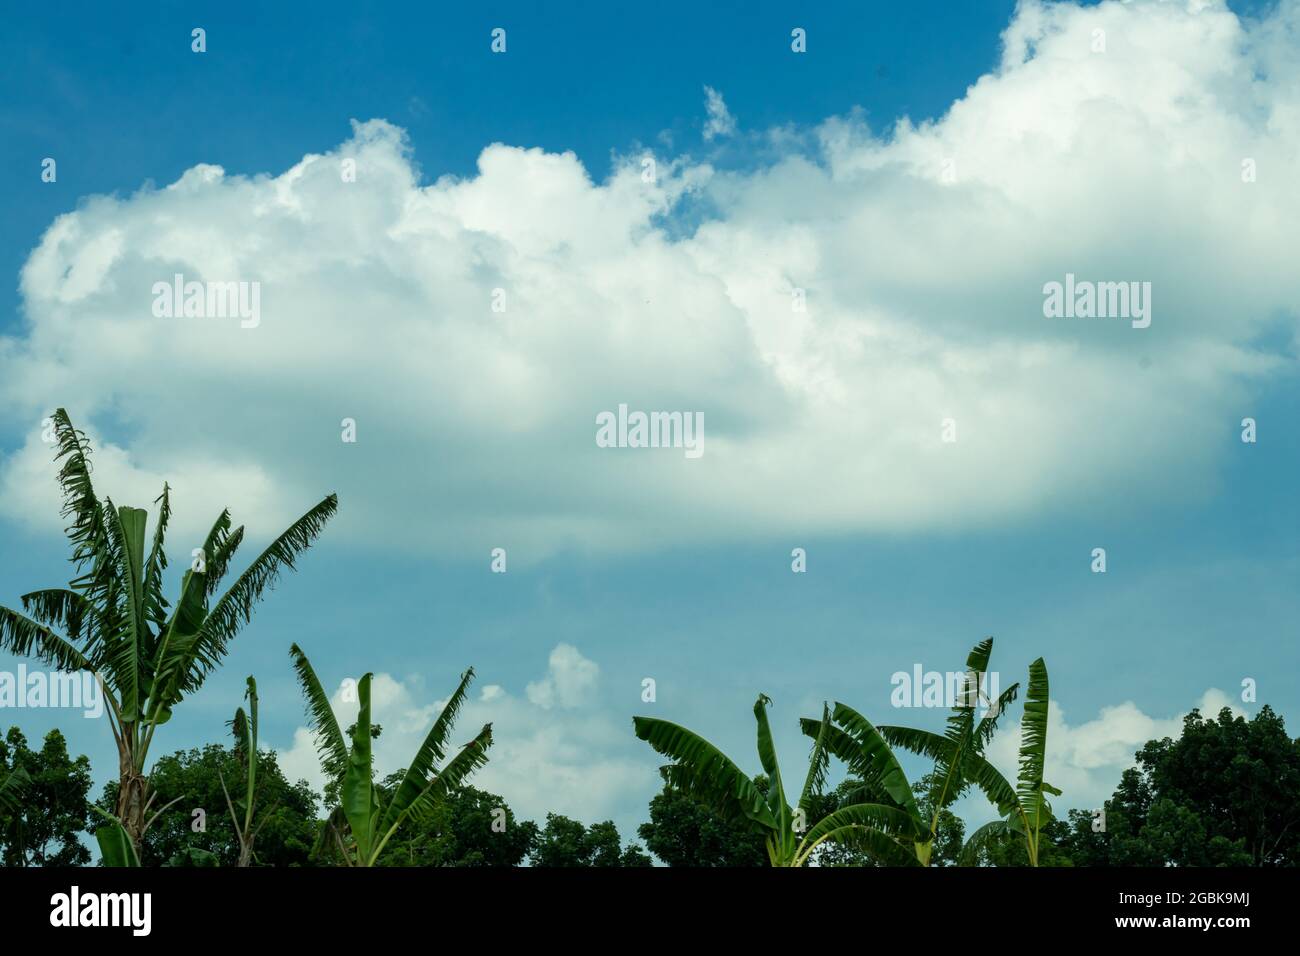 Riesige Abdeckung von weißen Wolken am blauen Himmel mit grünen Bäumen und Bananenbäumen Stockfoto